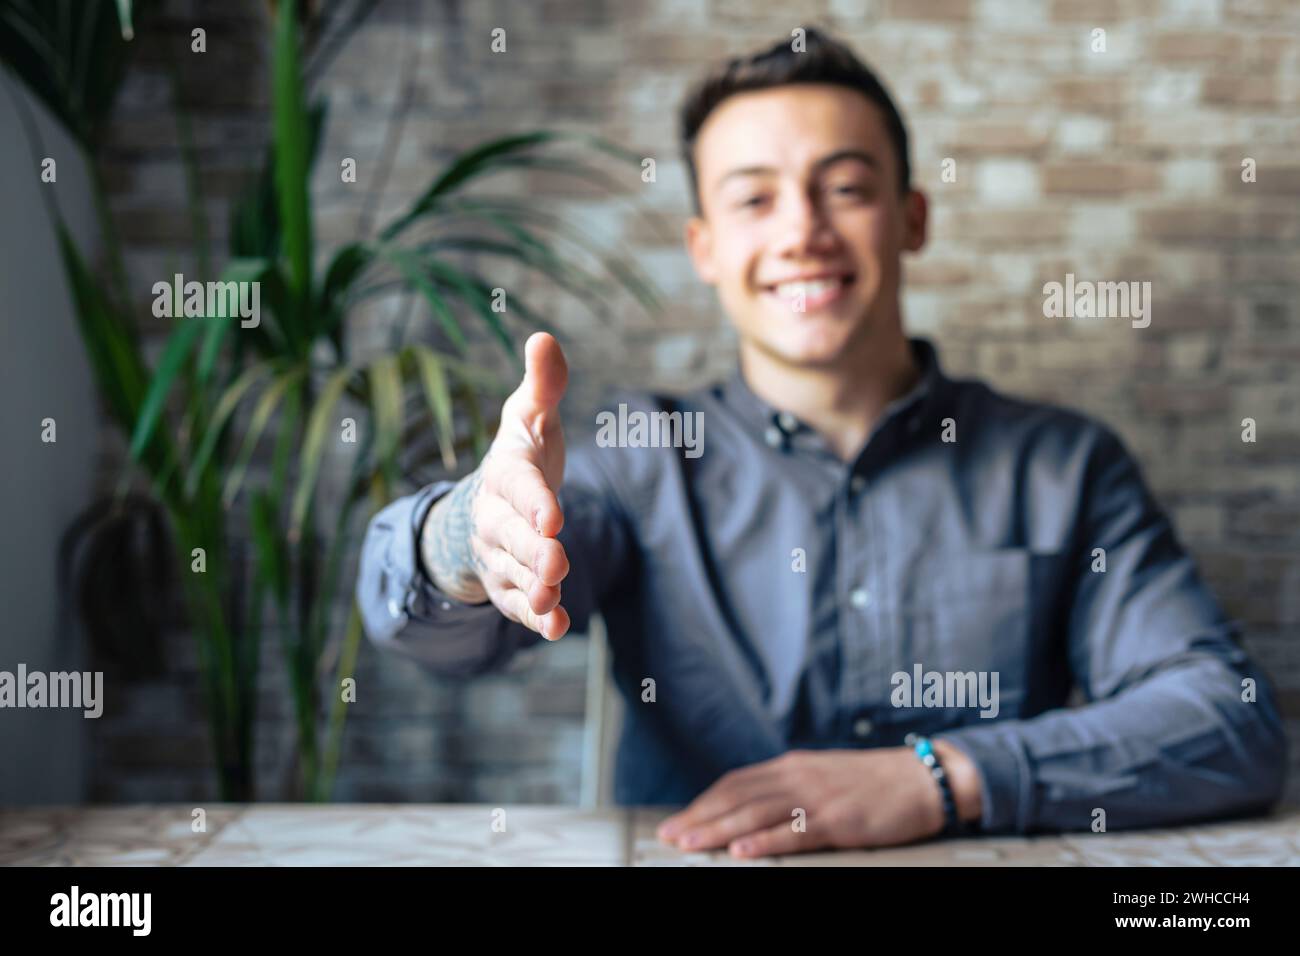 Ritratto di un giovane uomo felice che si allunga la mano invitando lo spettatore a unirsi al team aziendale, un manager amichevole e capace che guarda la fotocamera che si estende per mano per una stretta di mano che dà il benvenuto a un nuovo cliente o collega Foto Stock